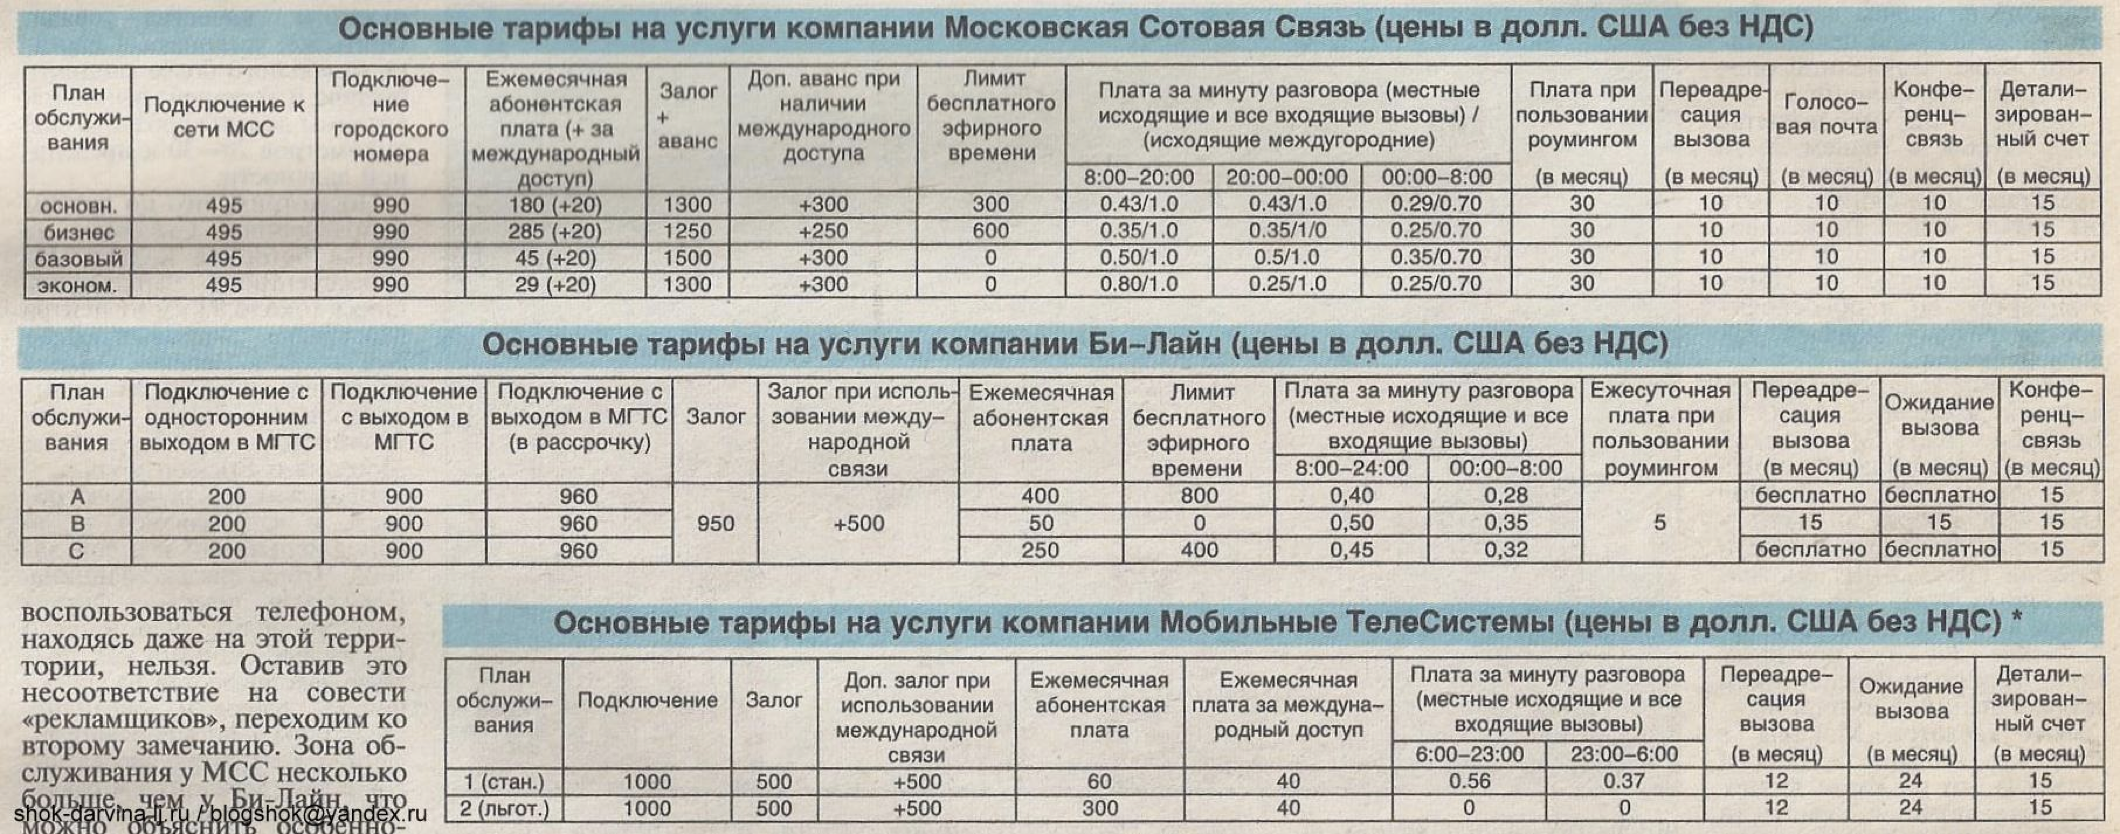 Тарифы связи московская область